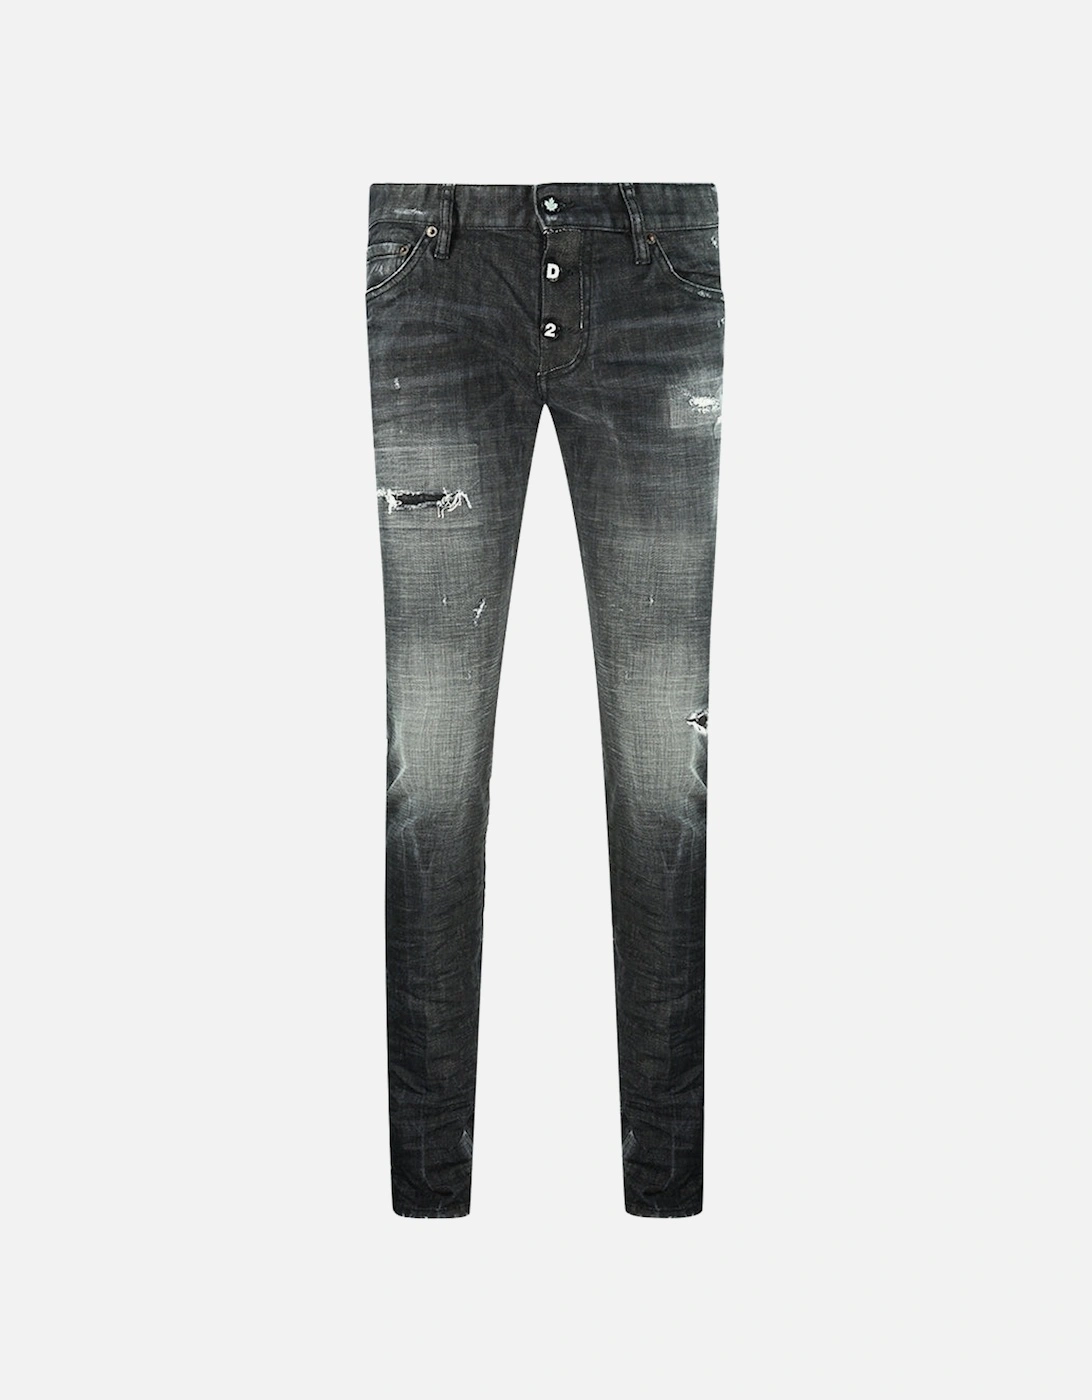 Slim Jean 1964 Destroyed Black Jeans, 4 of 3